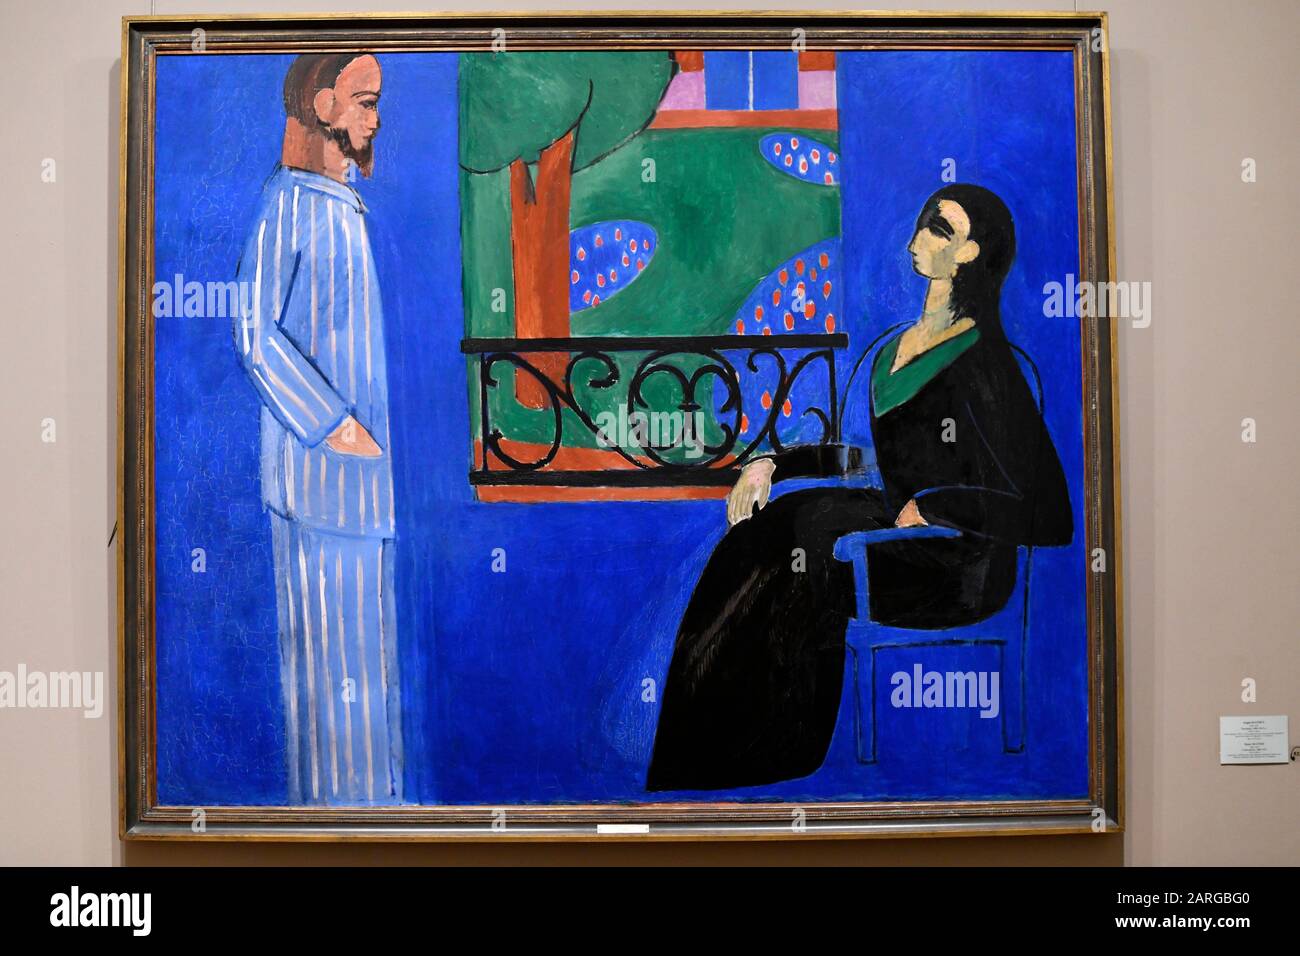 Konversation, 1909-1912, von Henri Matisse, staatliches Museum der Einsiedelei, Sankt Petersburg Russland, Europa. Stockfoto